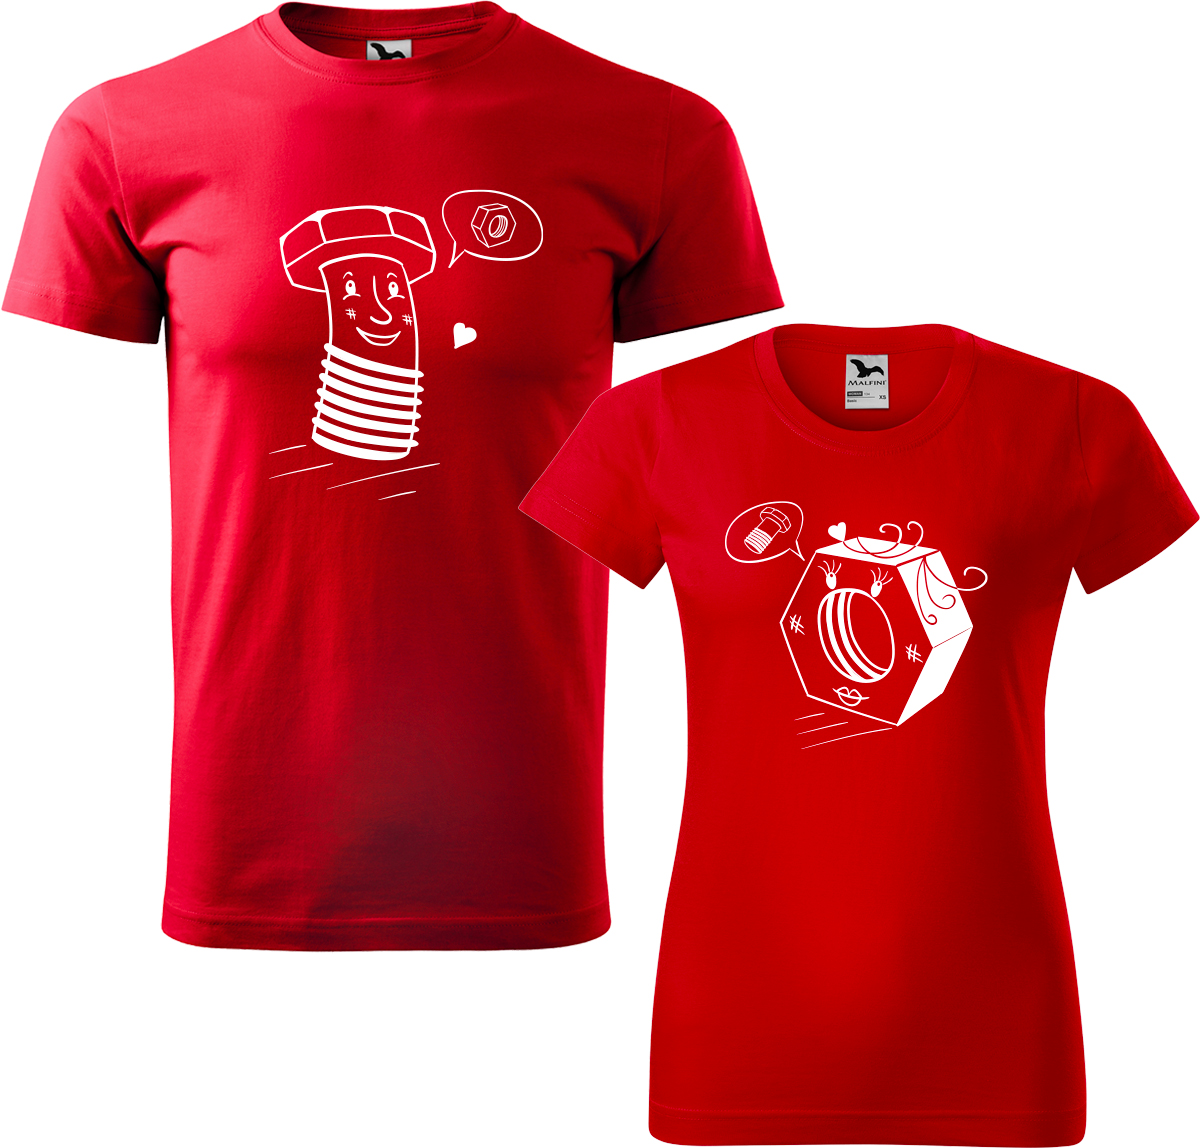 Trička pro páry - Šroubek a matička Barva: Červená (07), Velikost dámské tričko: S, Velikost pánské tričko: XL